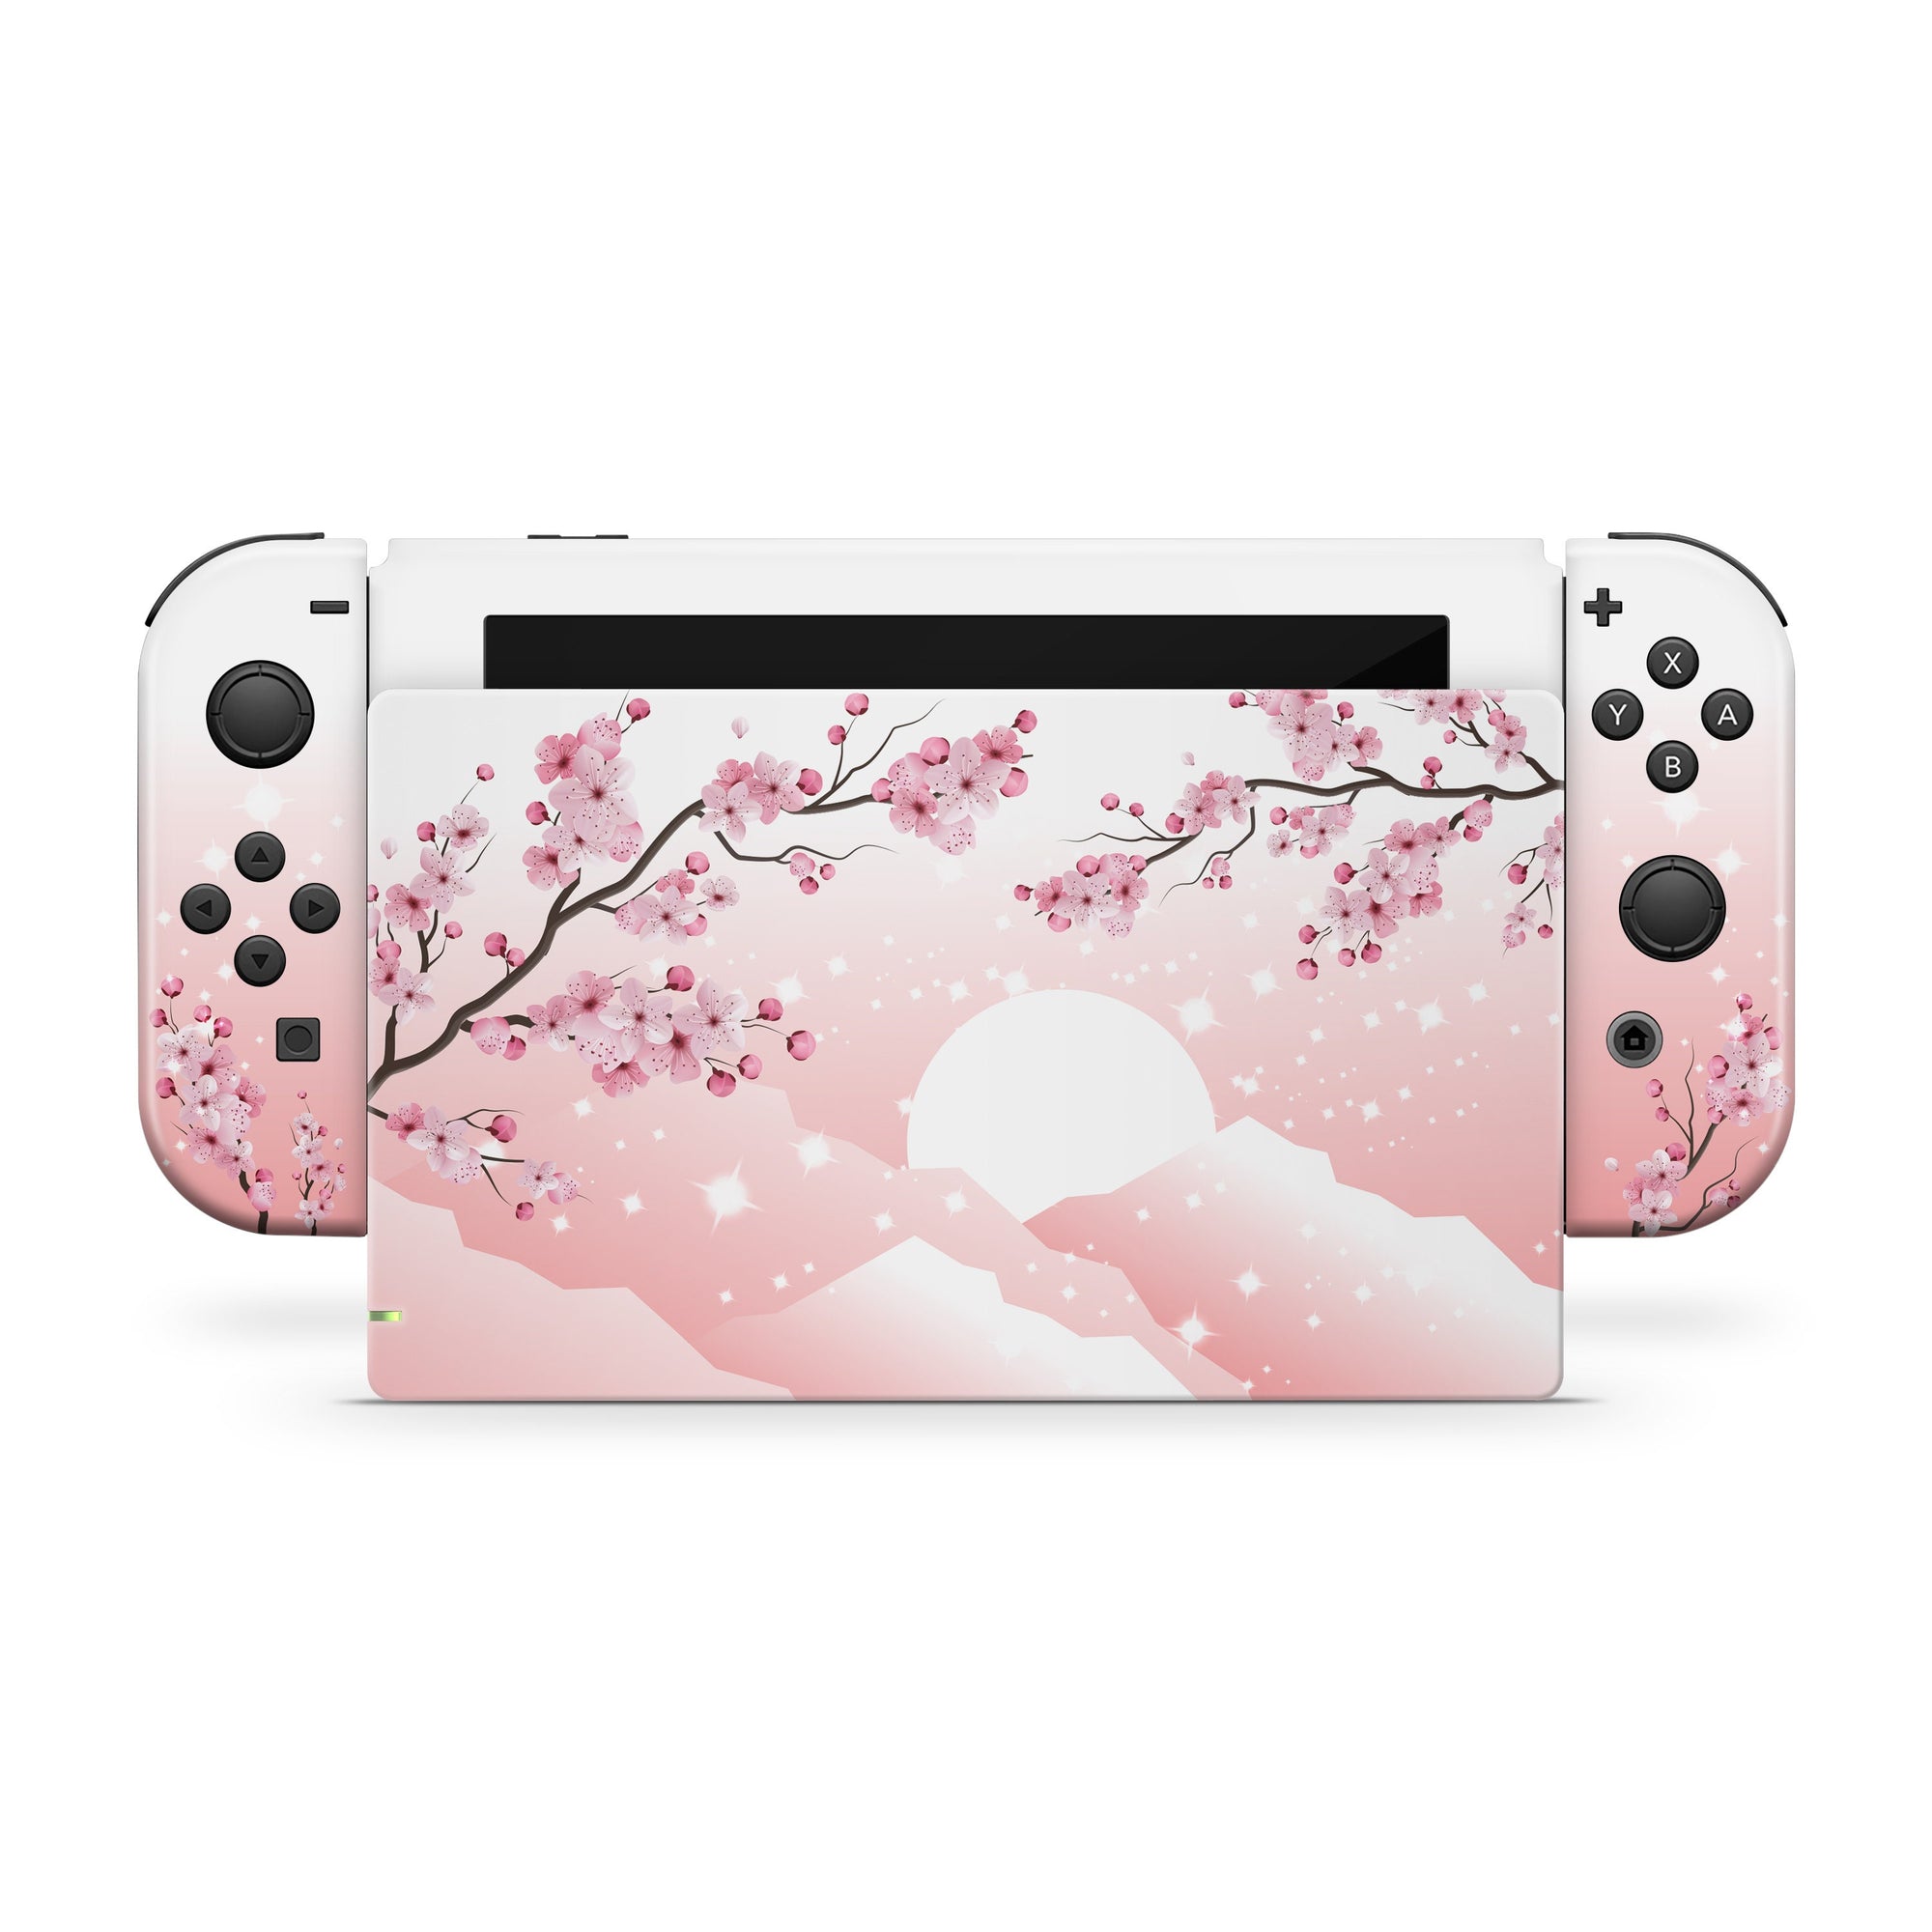 Nintendo switches skin Cherries blossoms, Pink Flowers sakura switch skin Full cover 3m